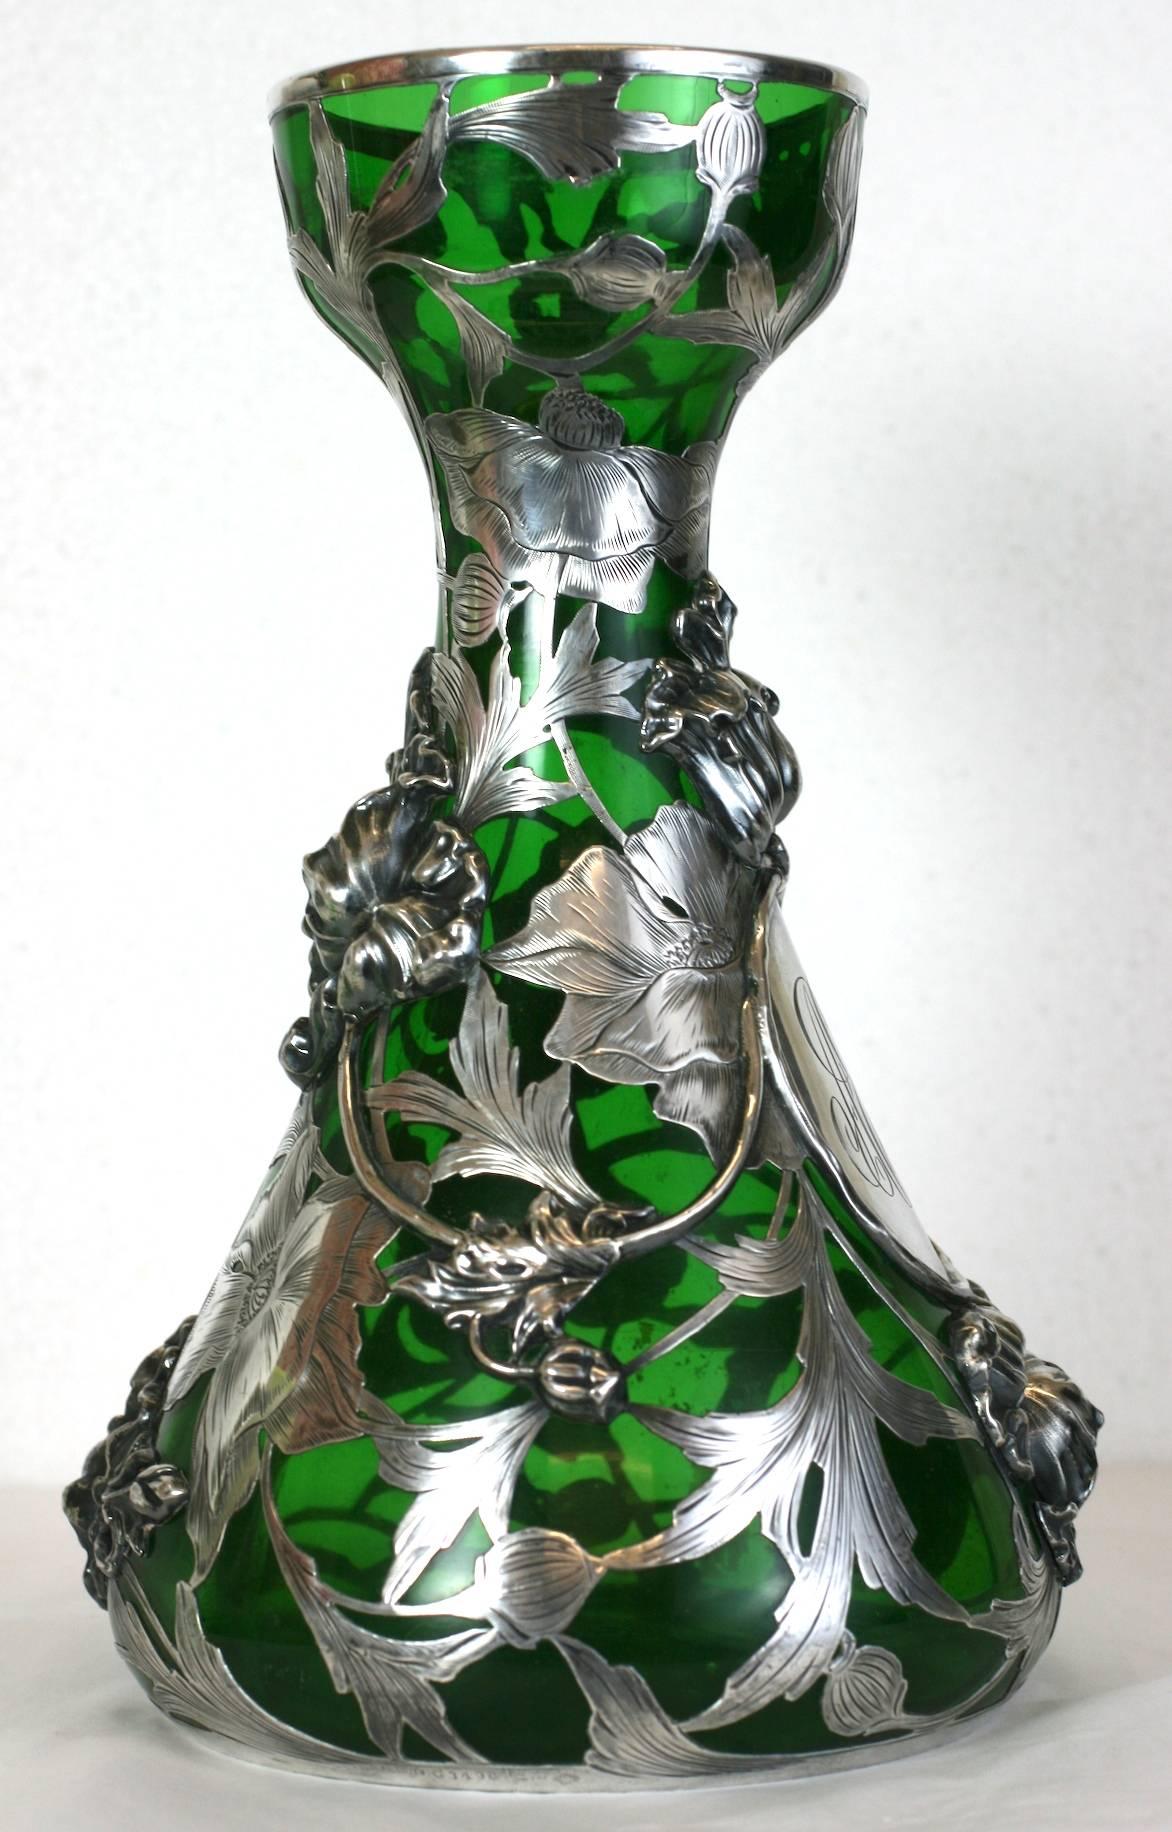 Außergewöhnlich seltene Vase mit Silberauflage von Alvin Mfg Co. aus Providence Rhode Island aus dem späten 19. Jahrhundert. 
Diese Vase ist ein Meisterwerk des Jugendstils mit Silber auf Glas. Das verschlungene florale Design des Sterlingsockels